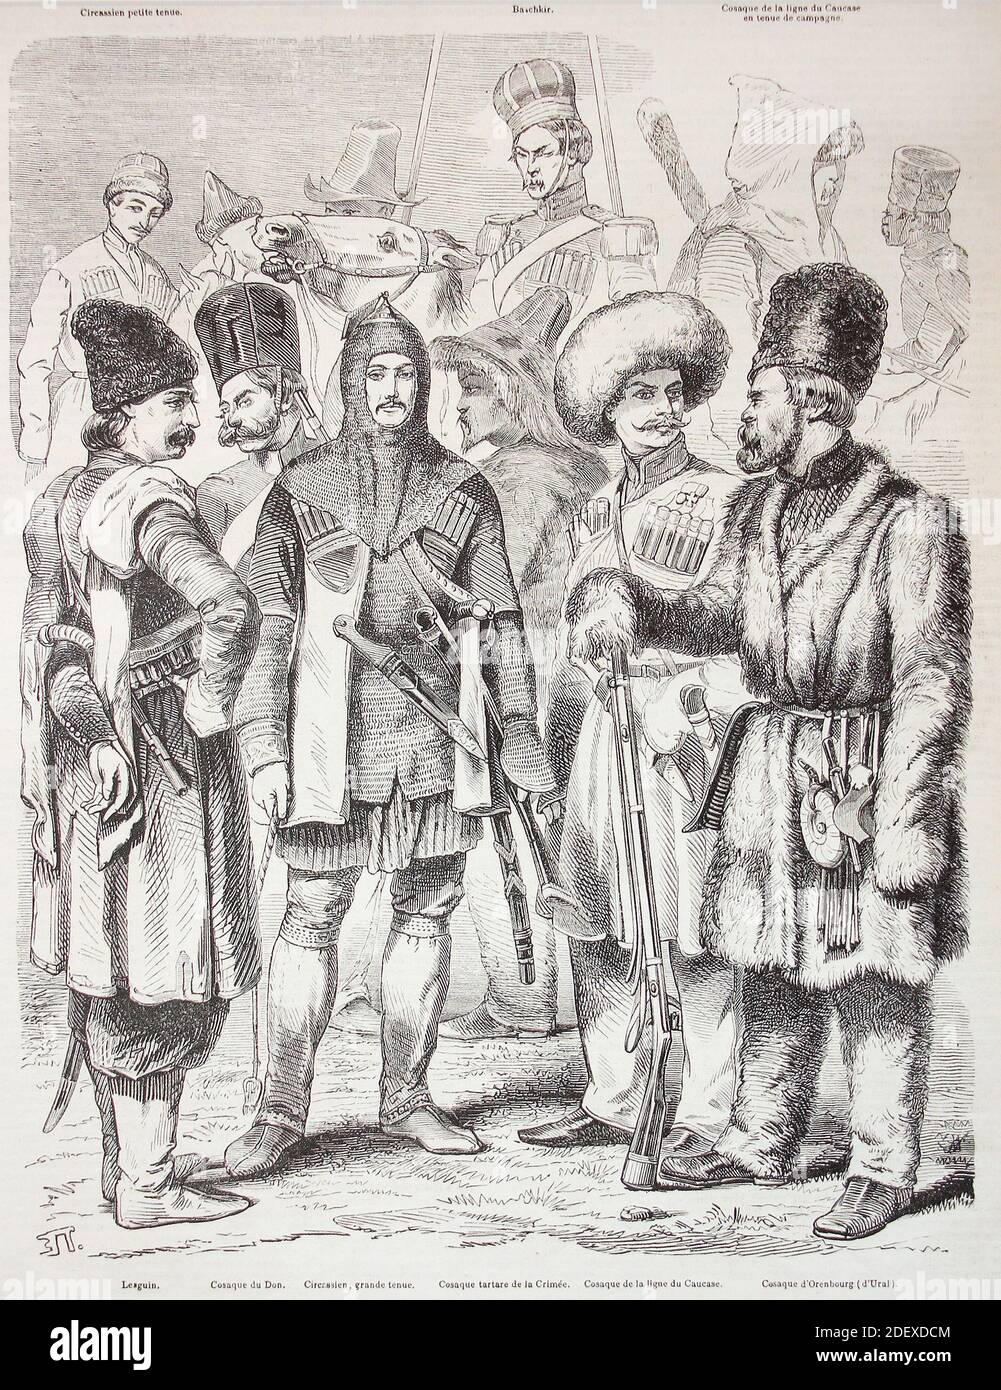 Troupes irrégulières de l'armée russe au XIXe siècle. Une gravure des années 1850. Banque D'Images